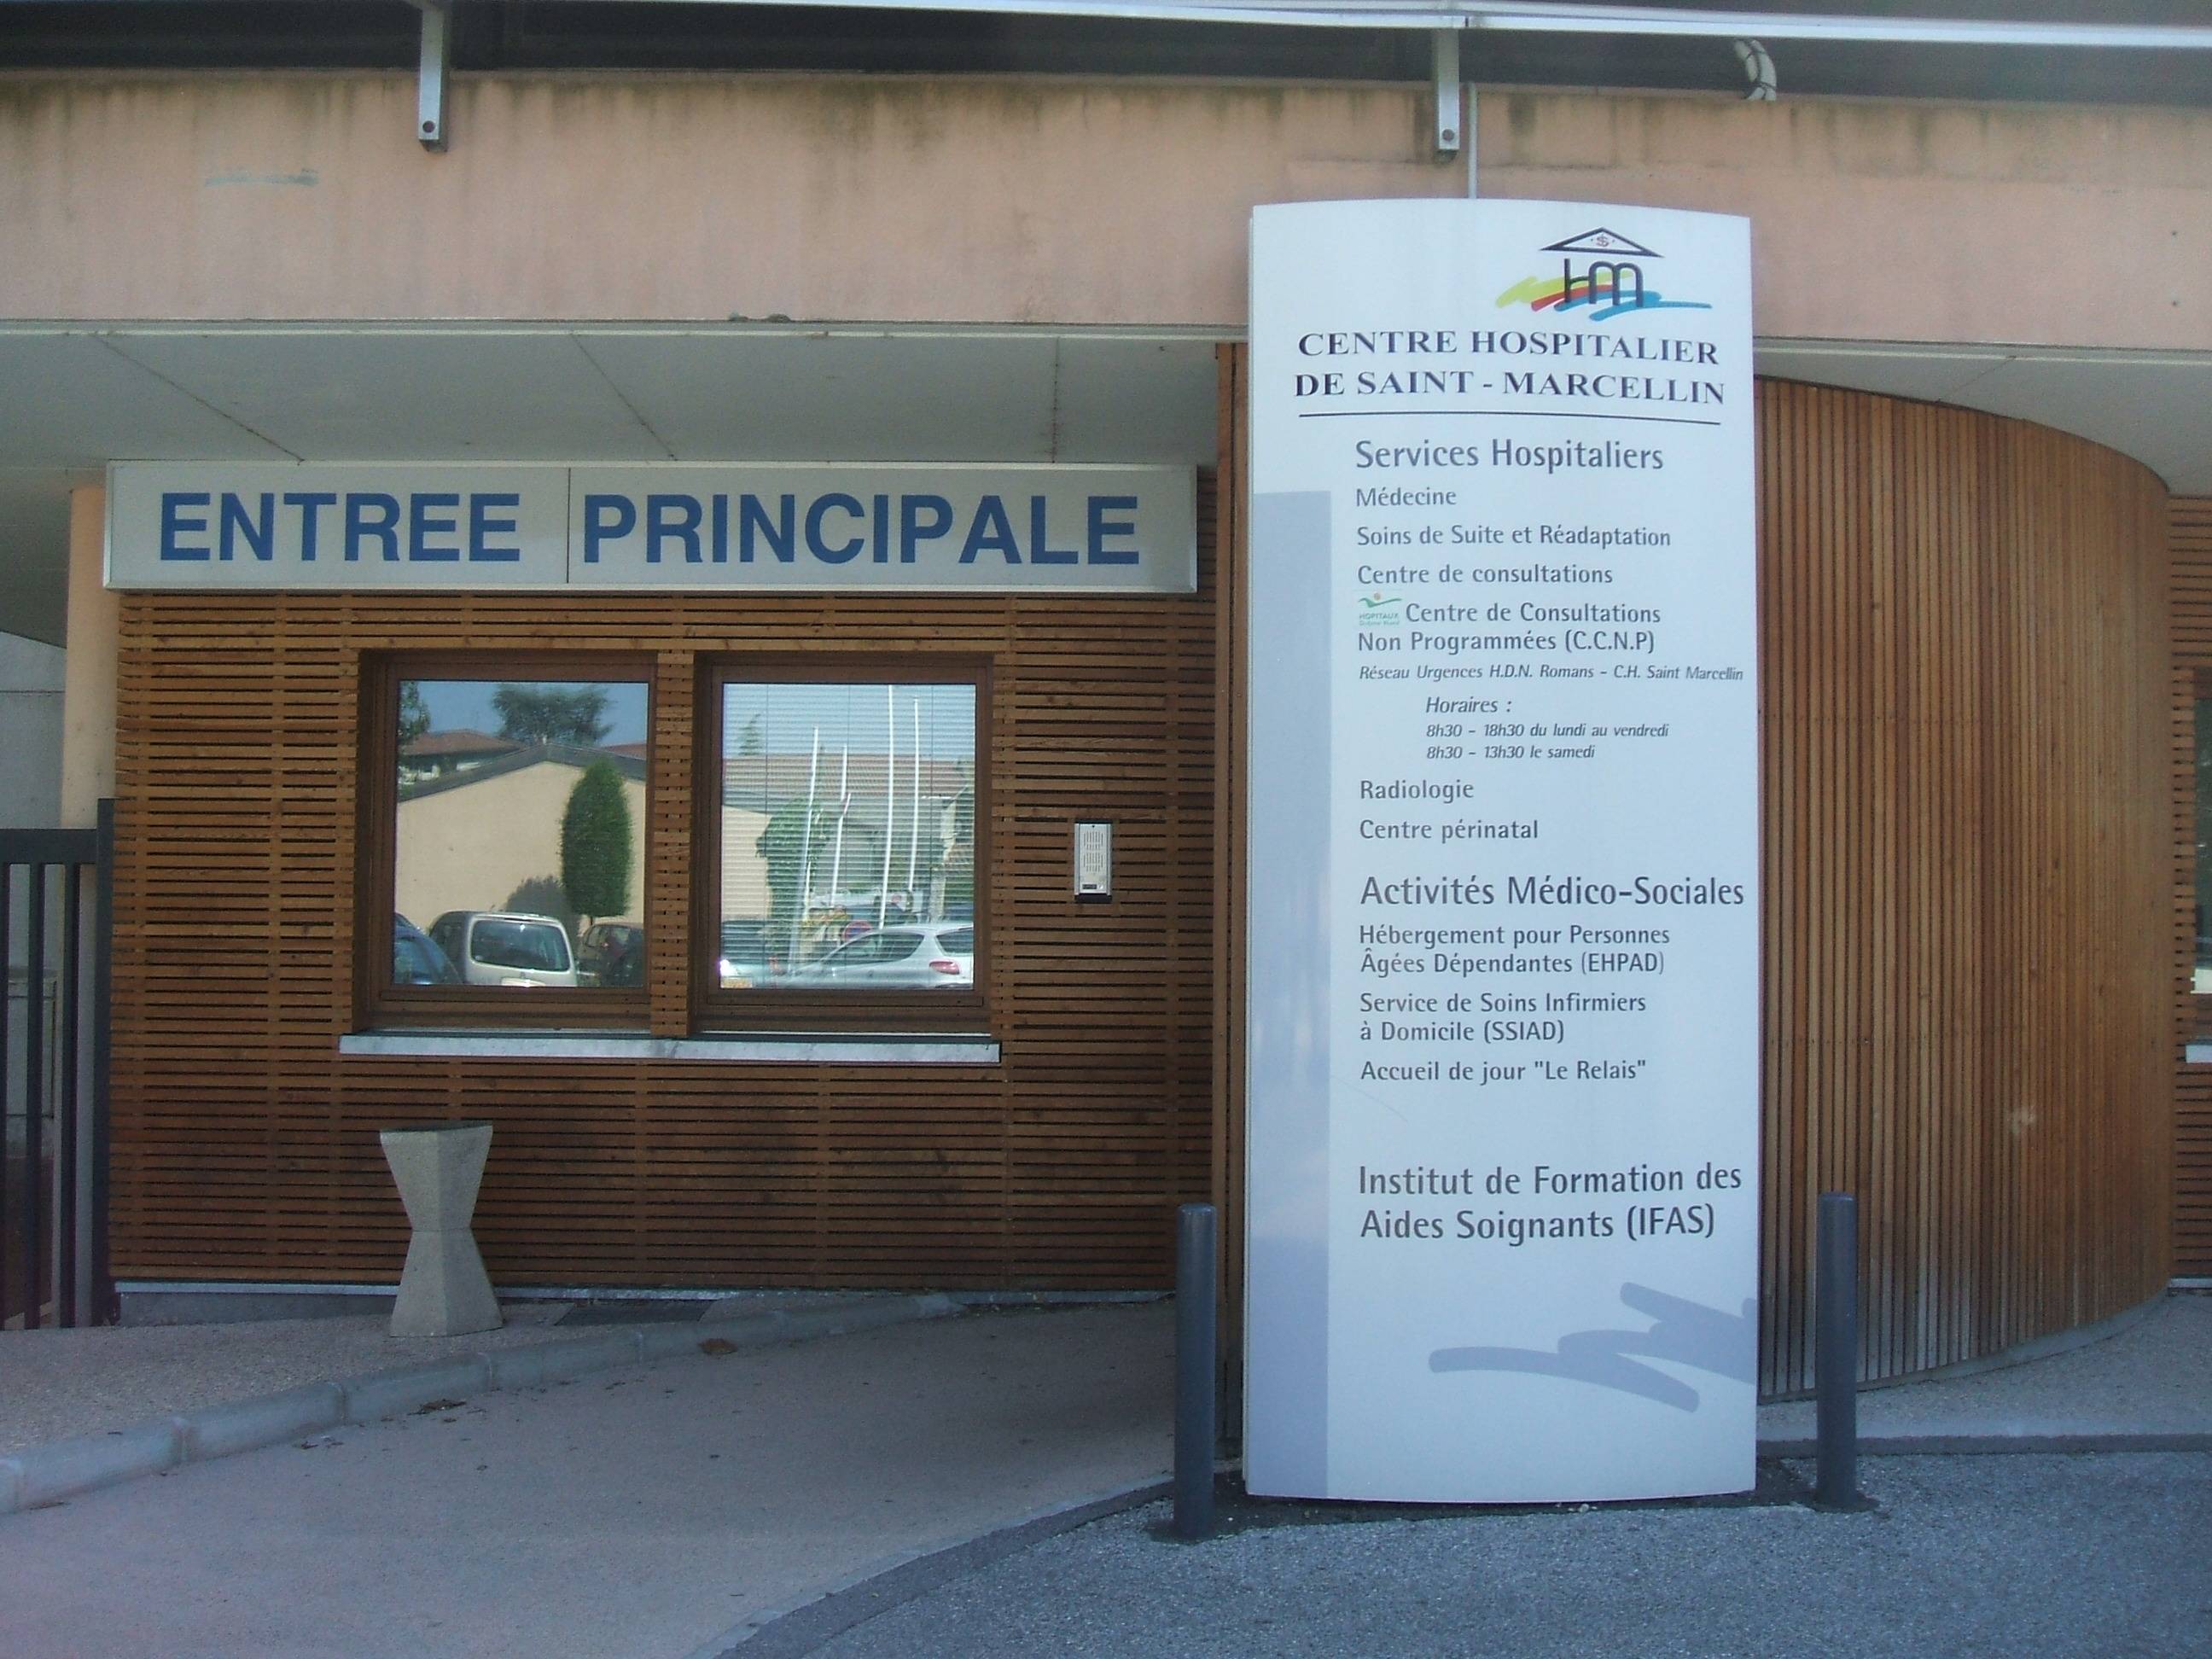 Centre hospitalier Vercors Isère (Saint-Marcellin)